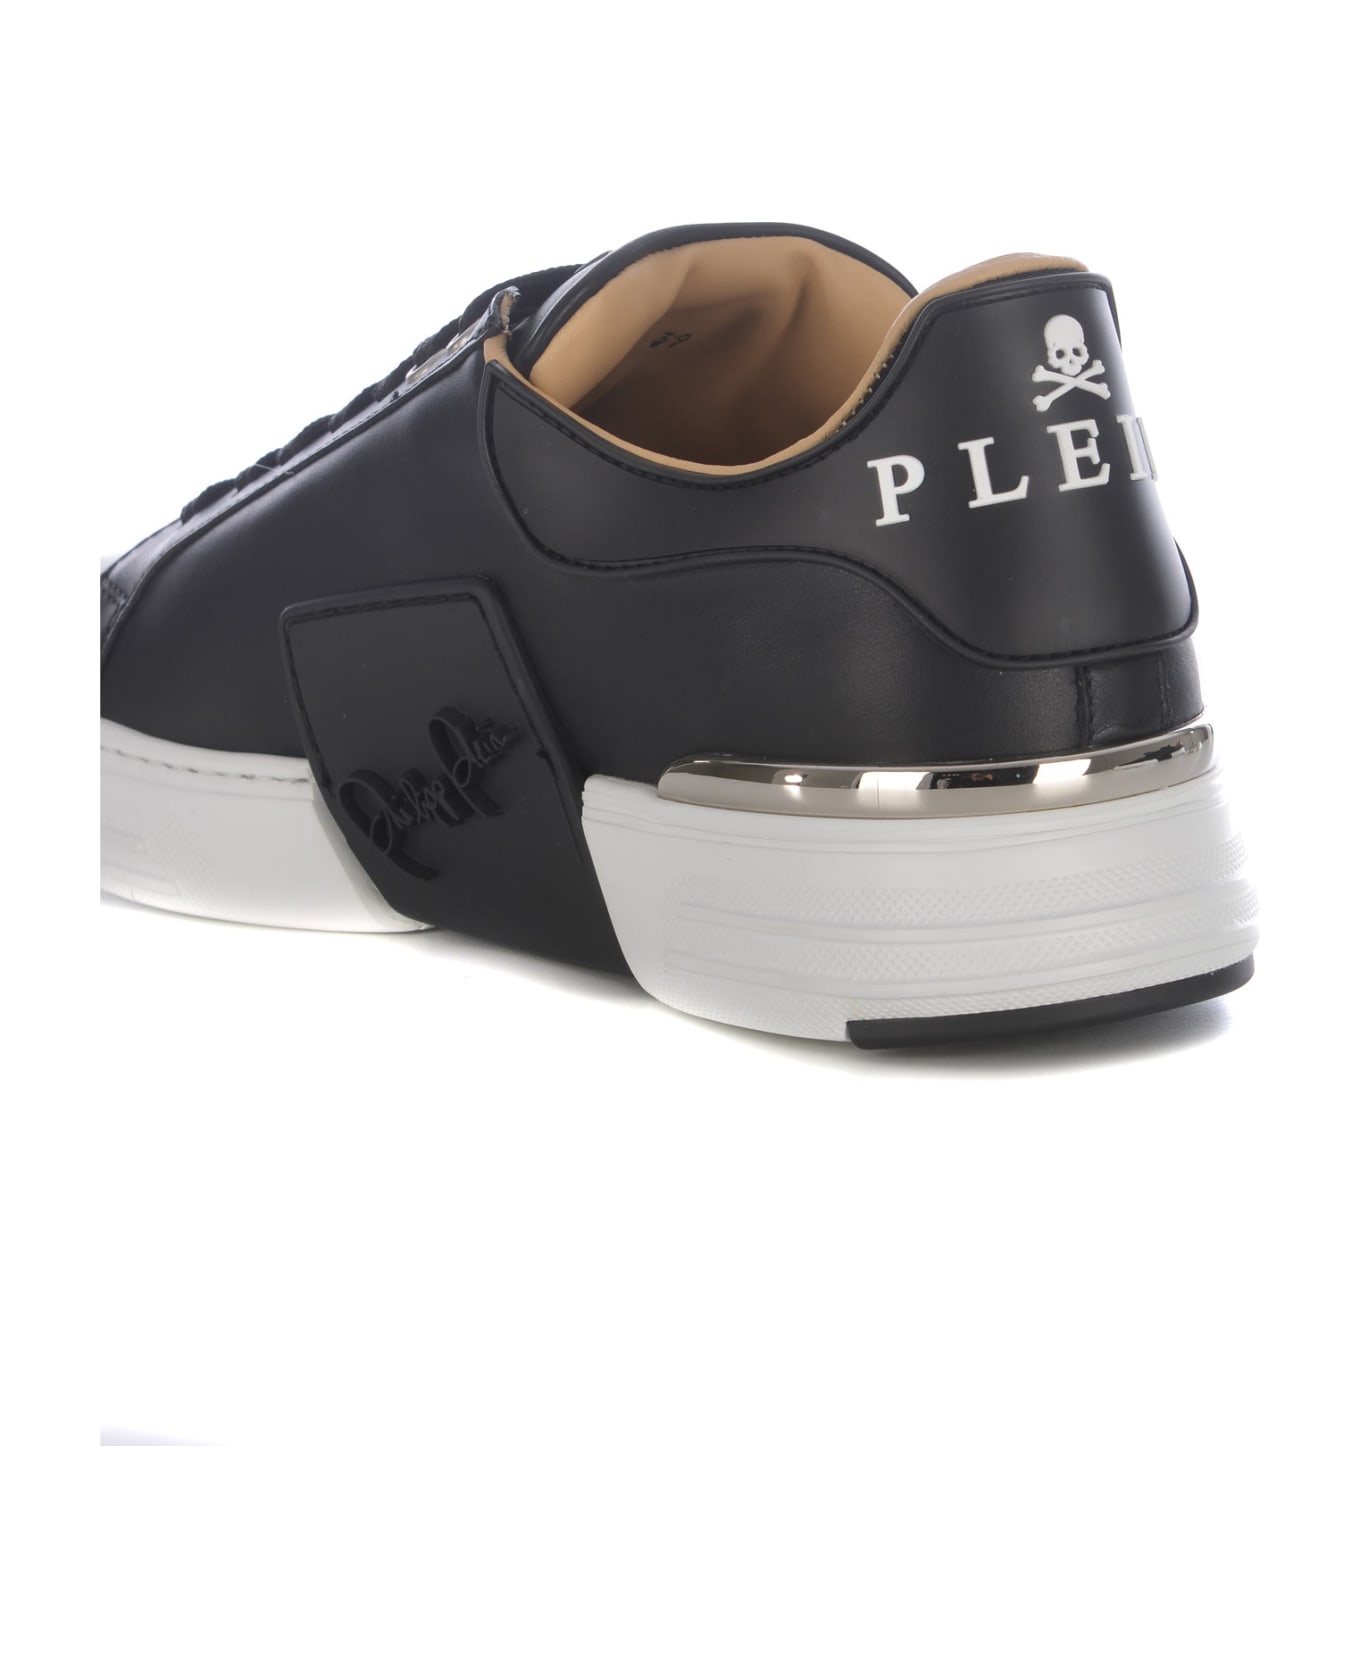 Philipp Plein Sneakers Philipp Plein "phantom" In Leather - Nero